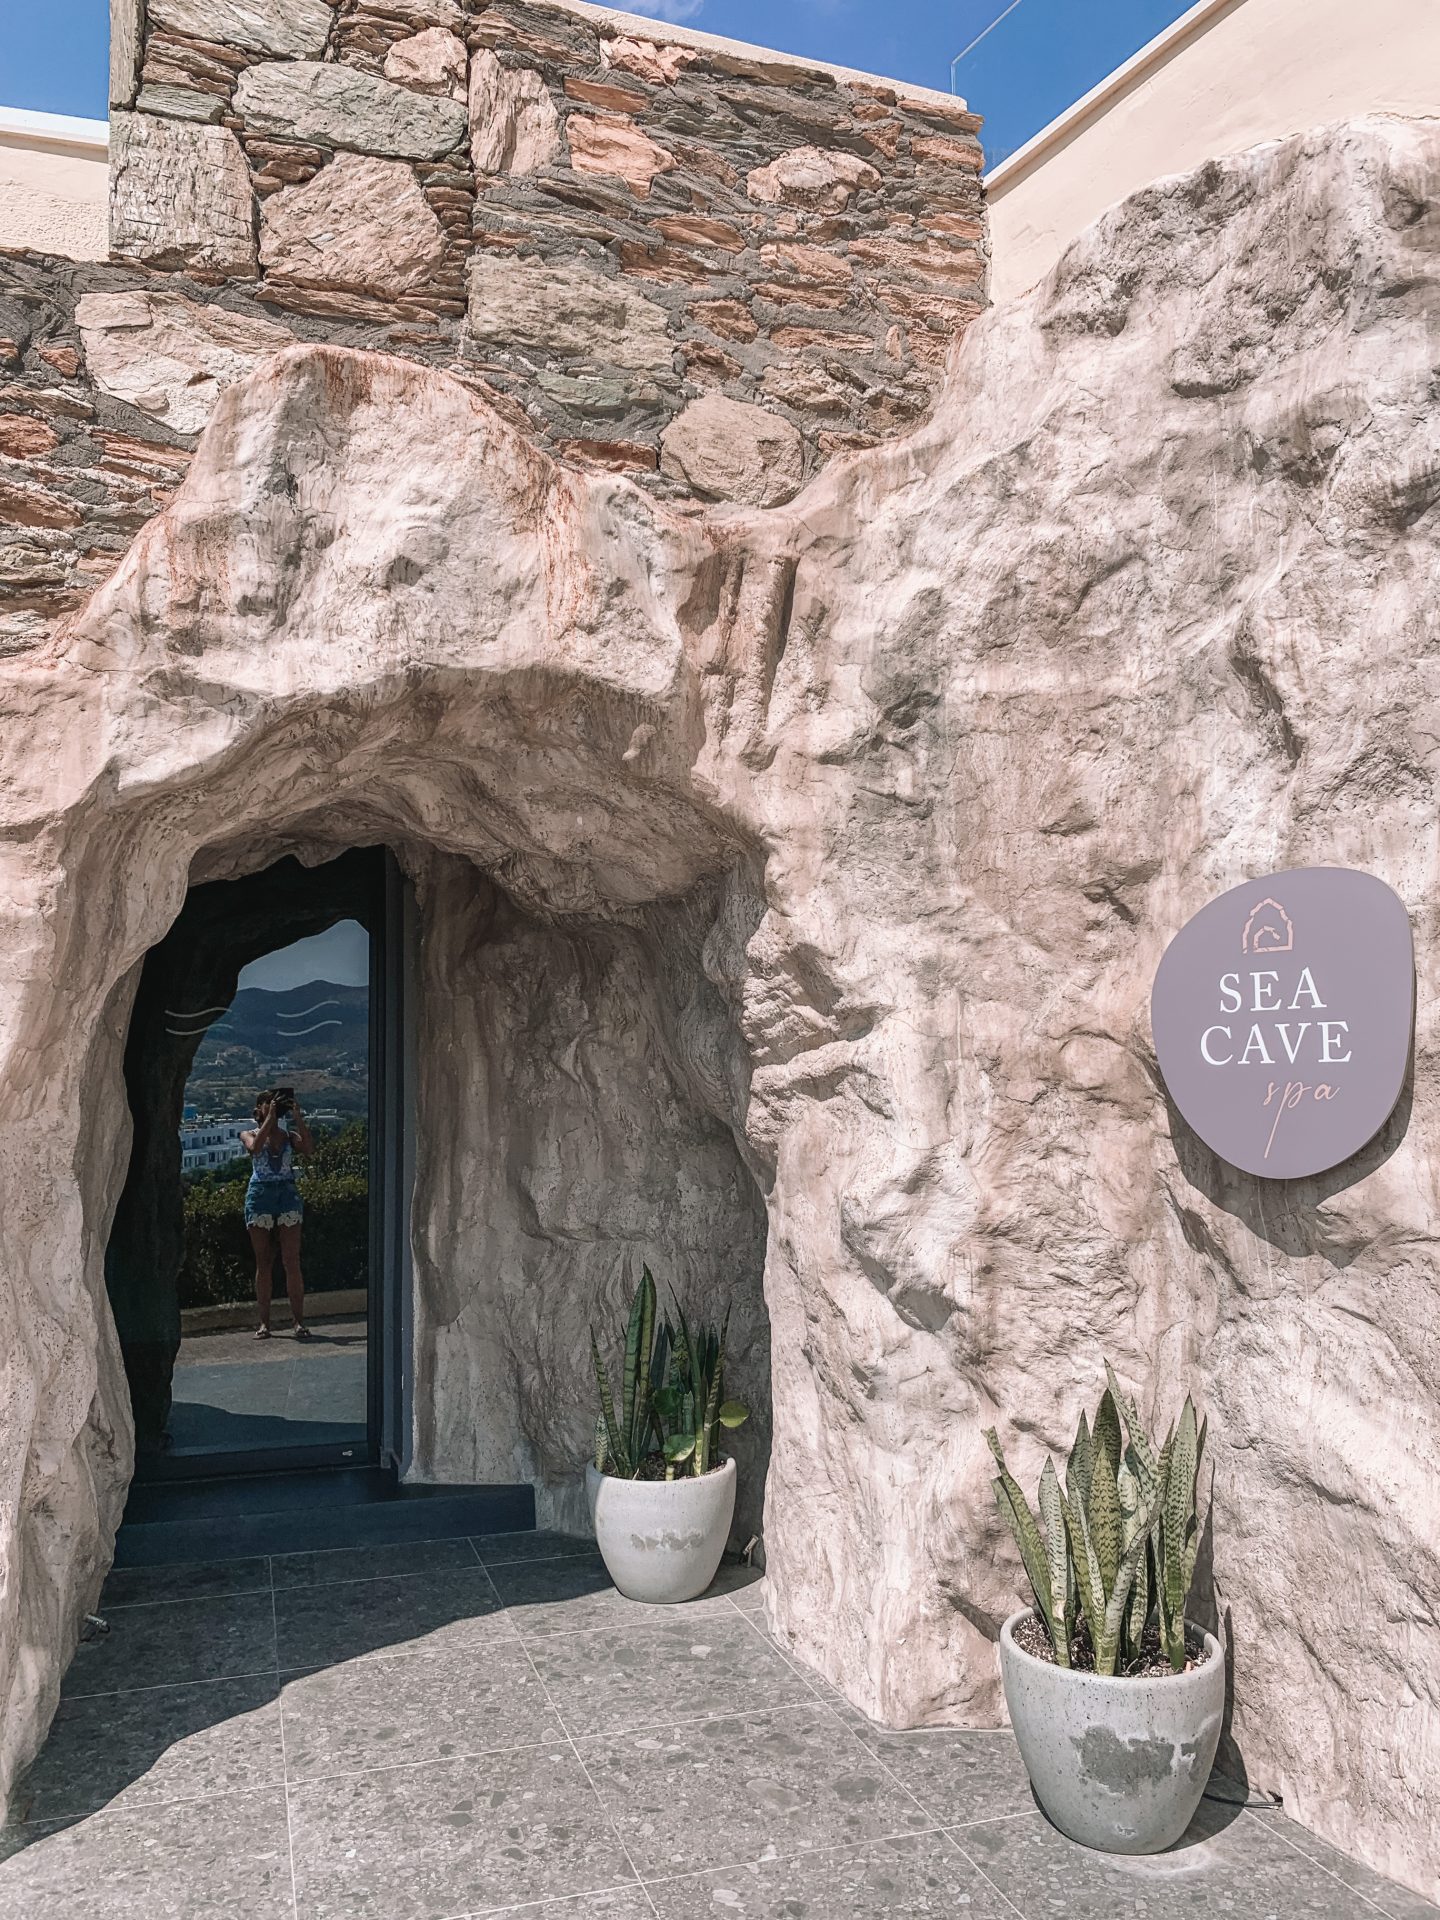 Sea Cave Spa - Sea Side Resort and Spa | Crete Greece